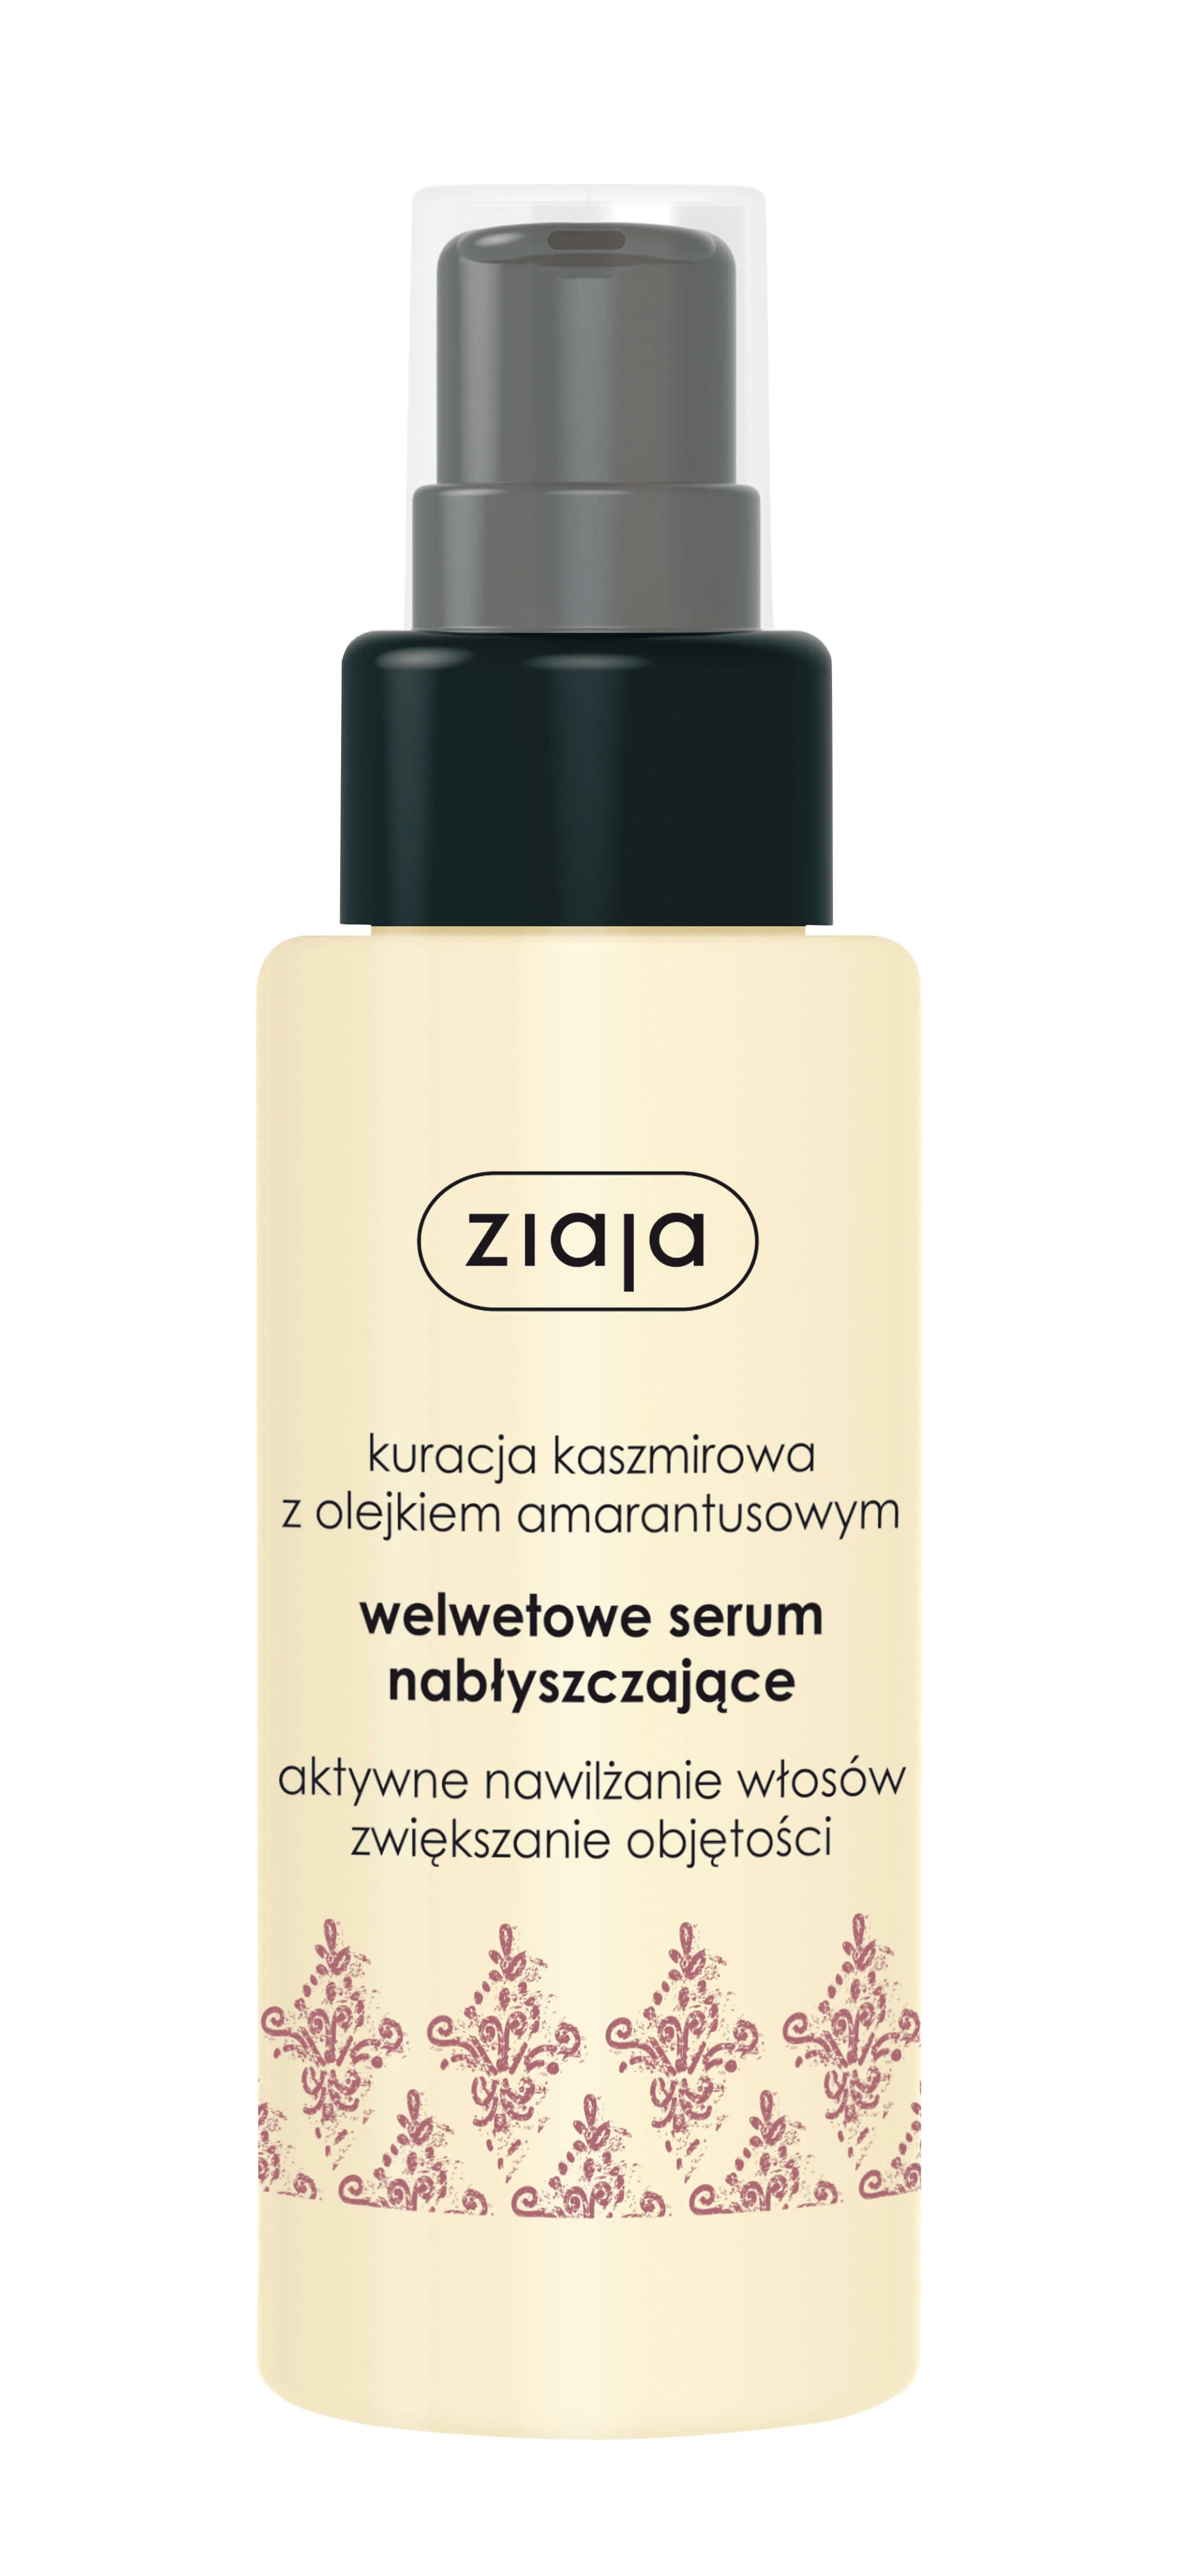 Ziaja Kaszmirowa, serum nabłyszczające do włosów, 50 ml